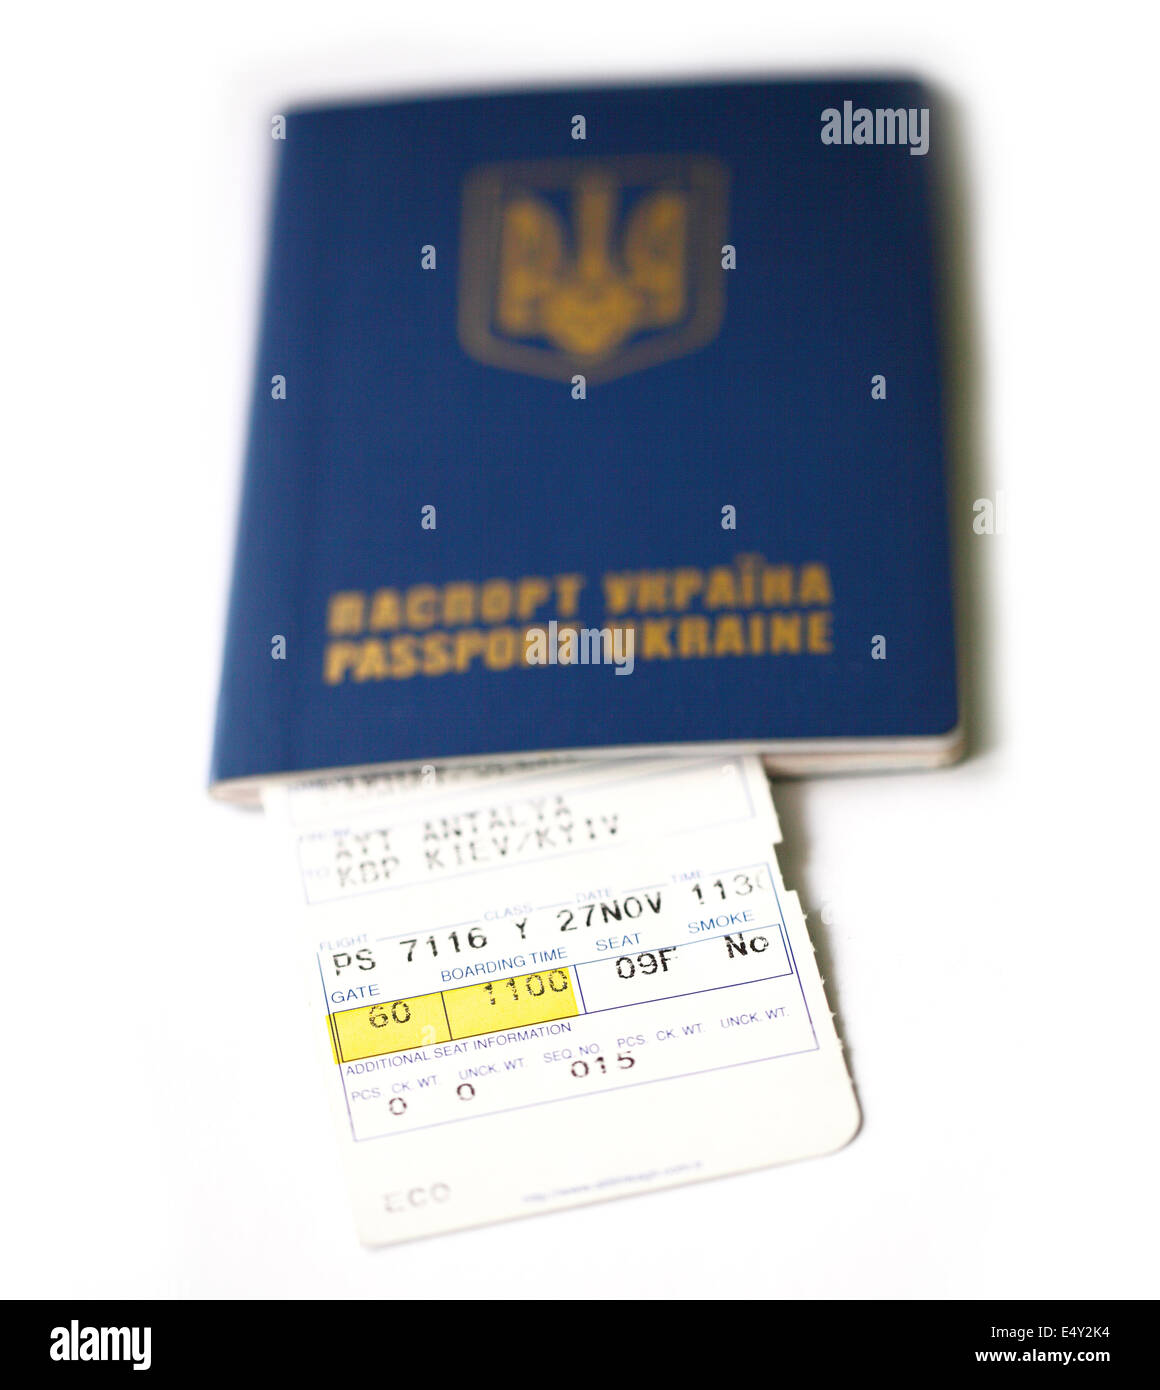 Ukrainischen Pass und Air ticket Stockfoto